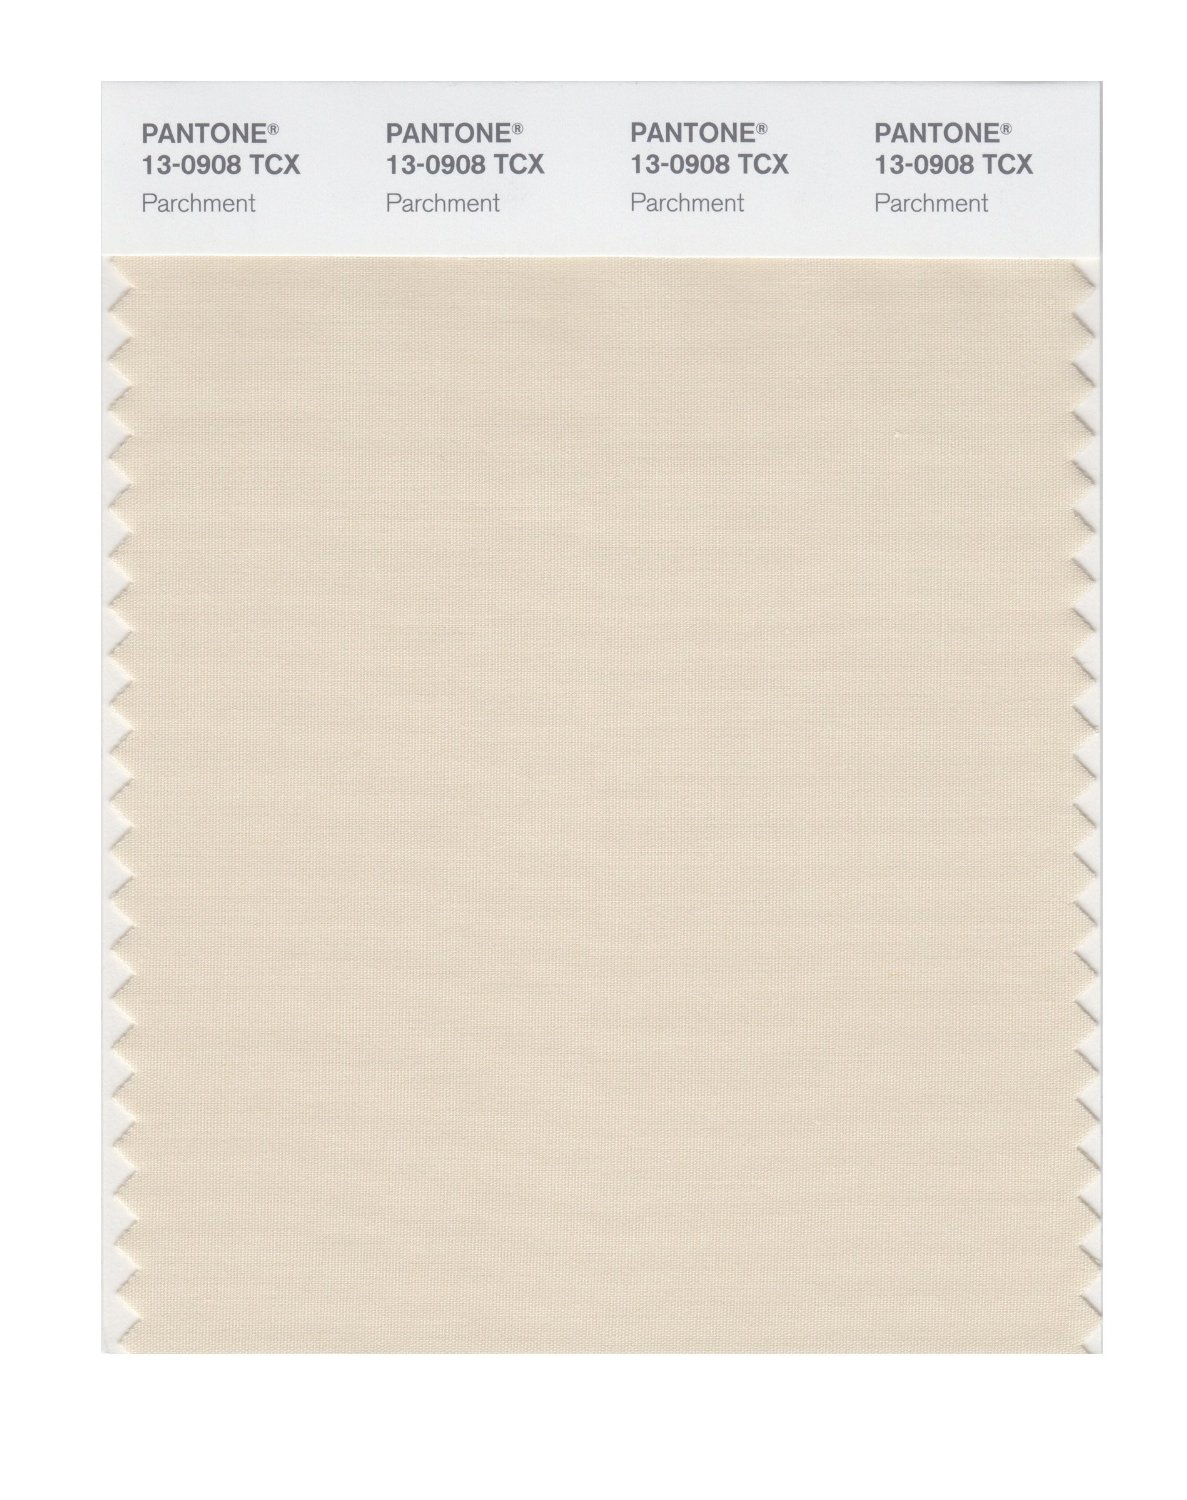 Pantone Cotton Swatch 13-0908 Parchment